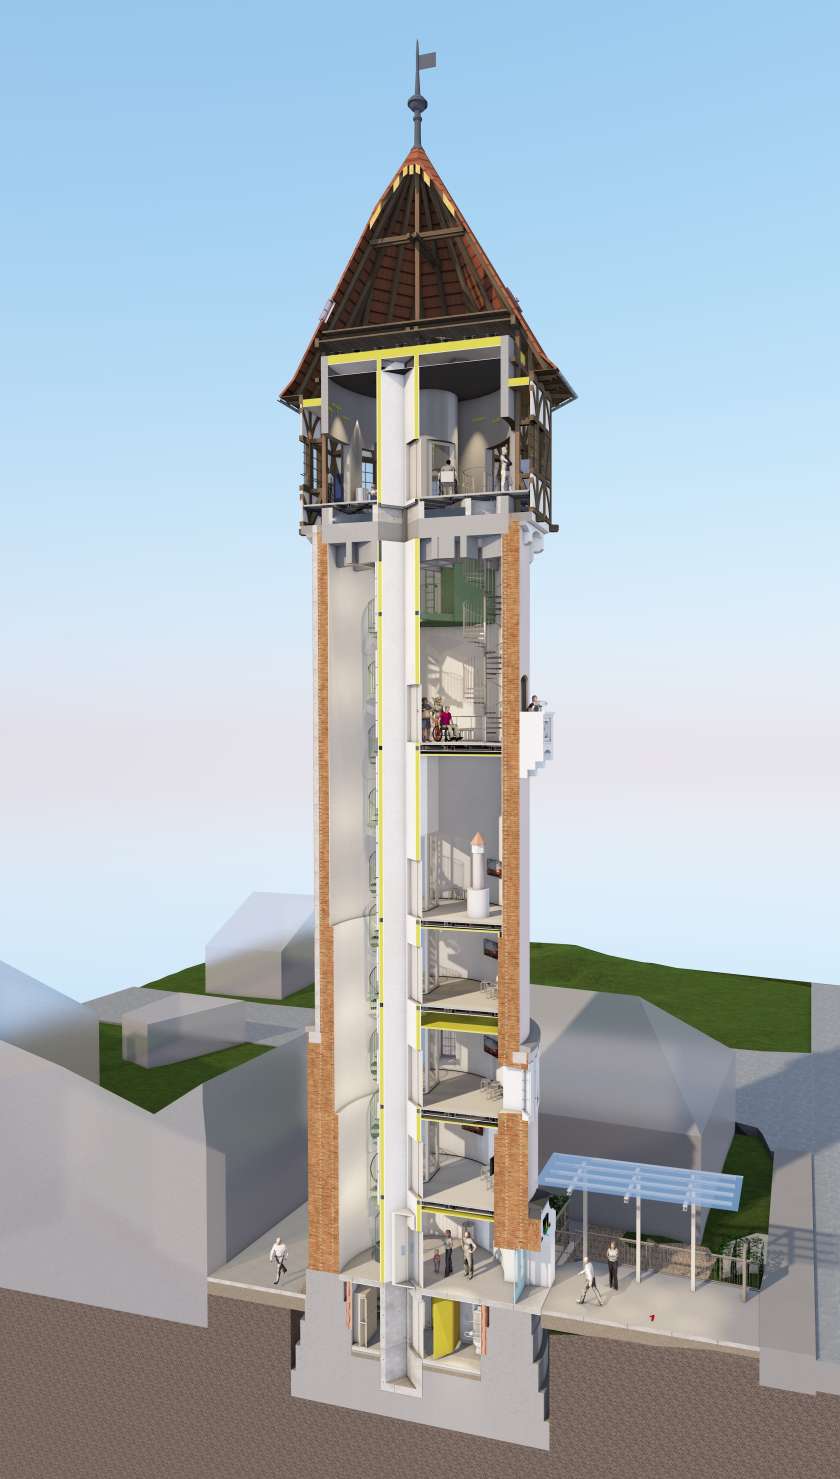 Podpisana pogodba za obnovo Vodovodnega stolpa v Brežicah